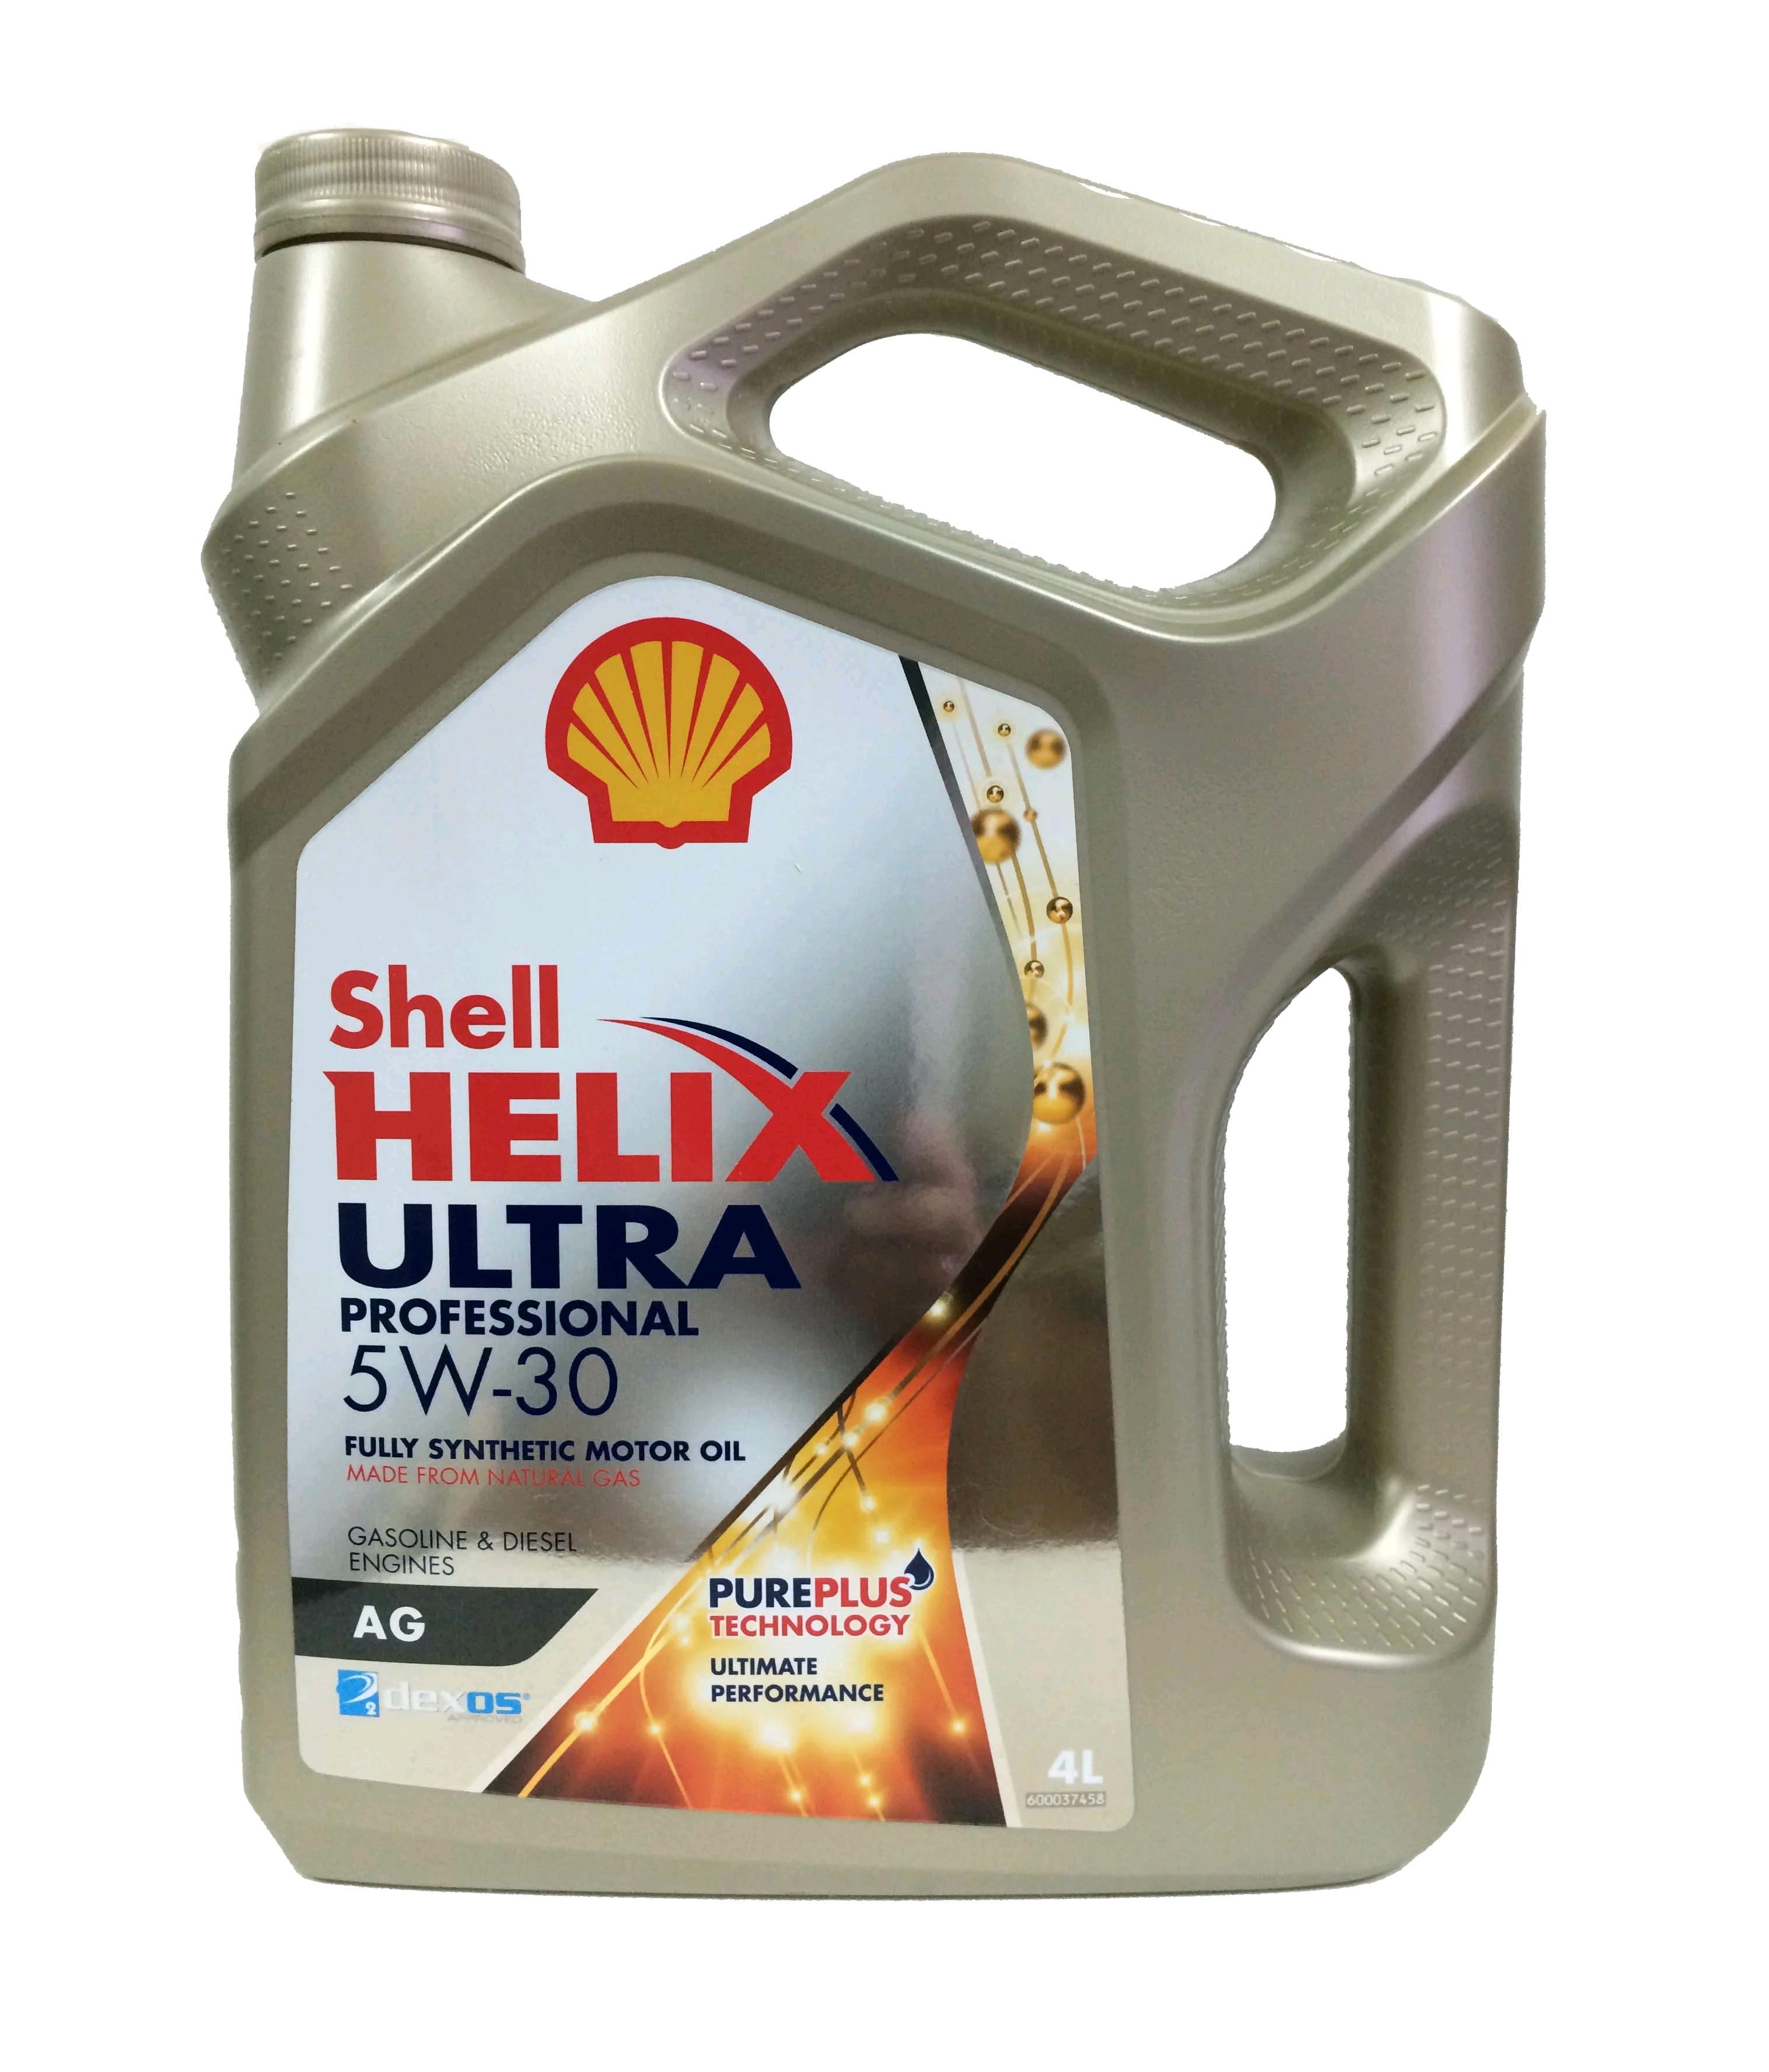  моторное Shell Helix Ultra Professional AG 5W-30 (4л): цена .